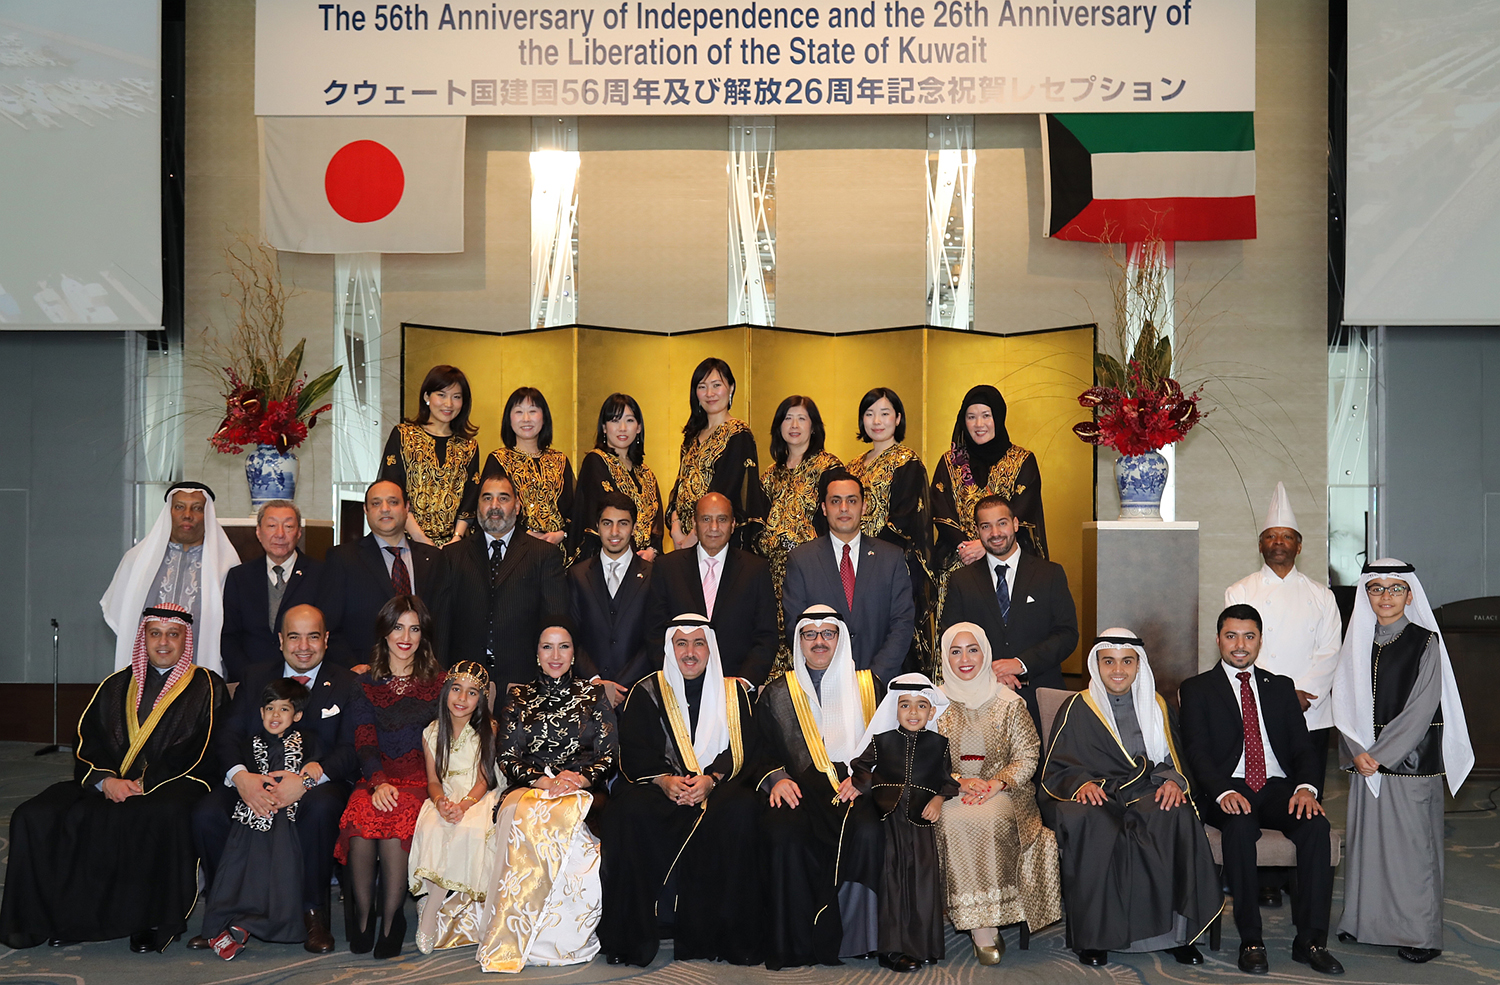 سفير دولة الكويت لدى اليابان عبدالرحمن العتيبي خلال حفل الاستقبال بمناسبة الأعياد الوطنية